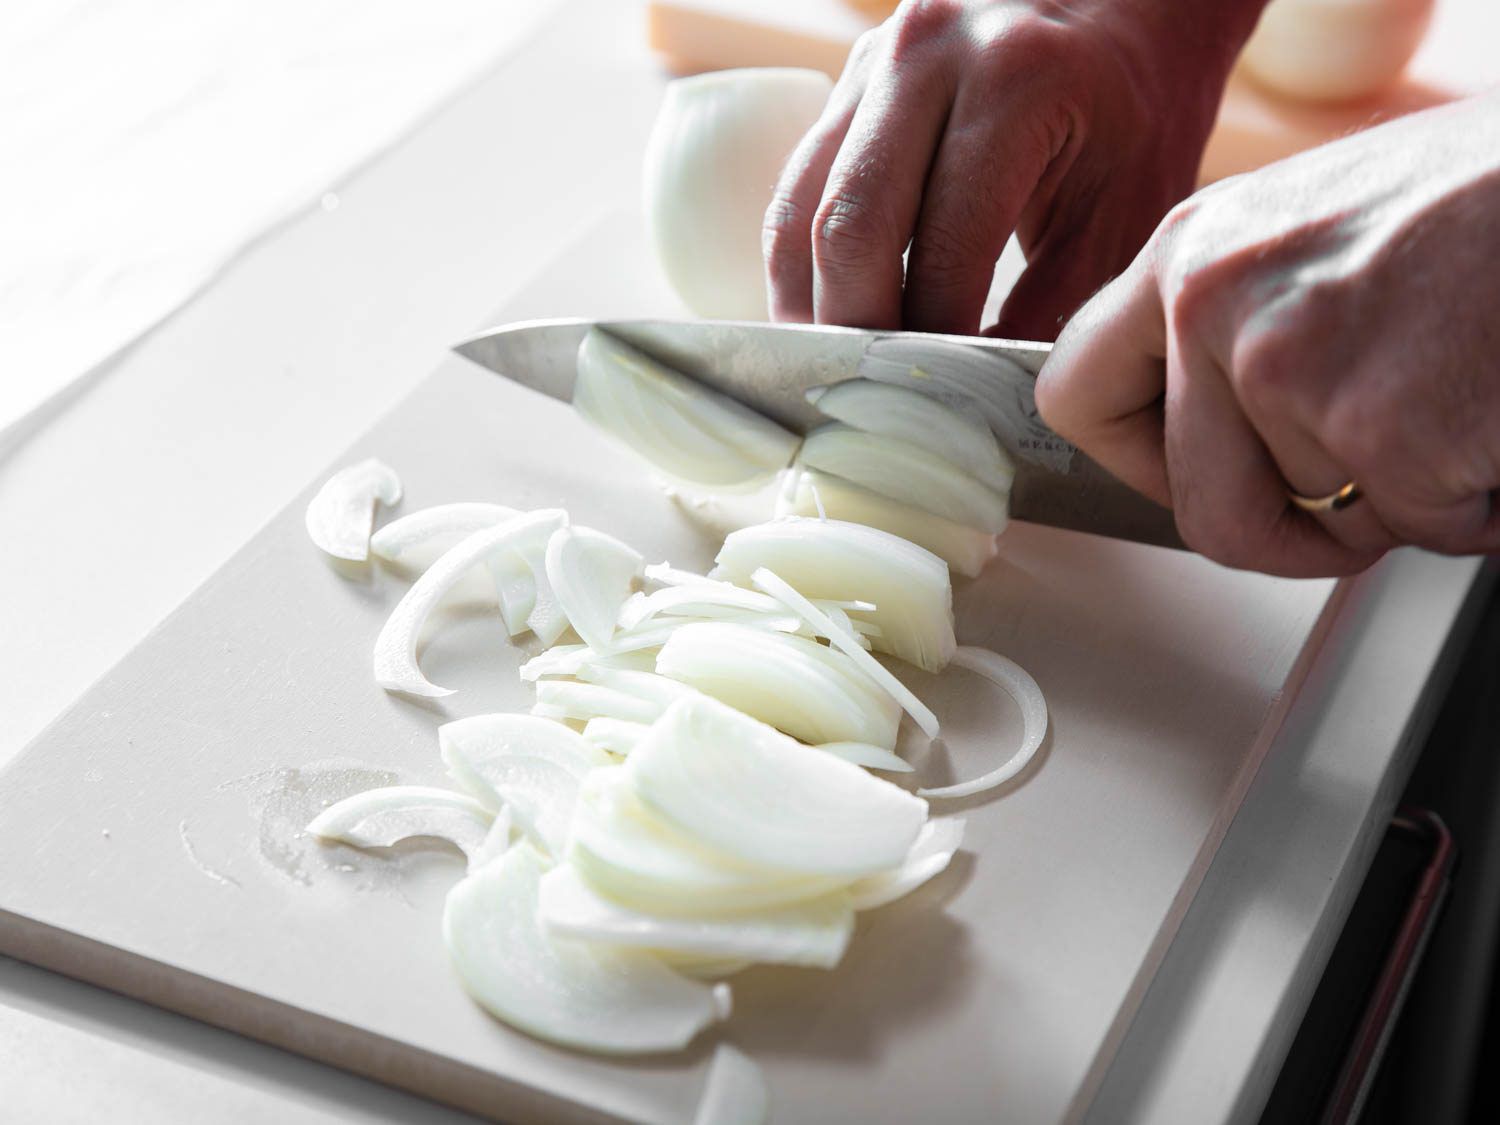 切洋葱:测试砧板性能的一个好方法。